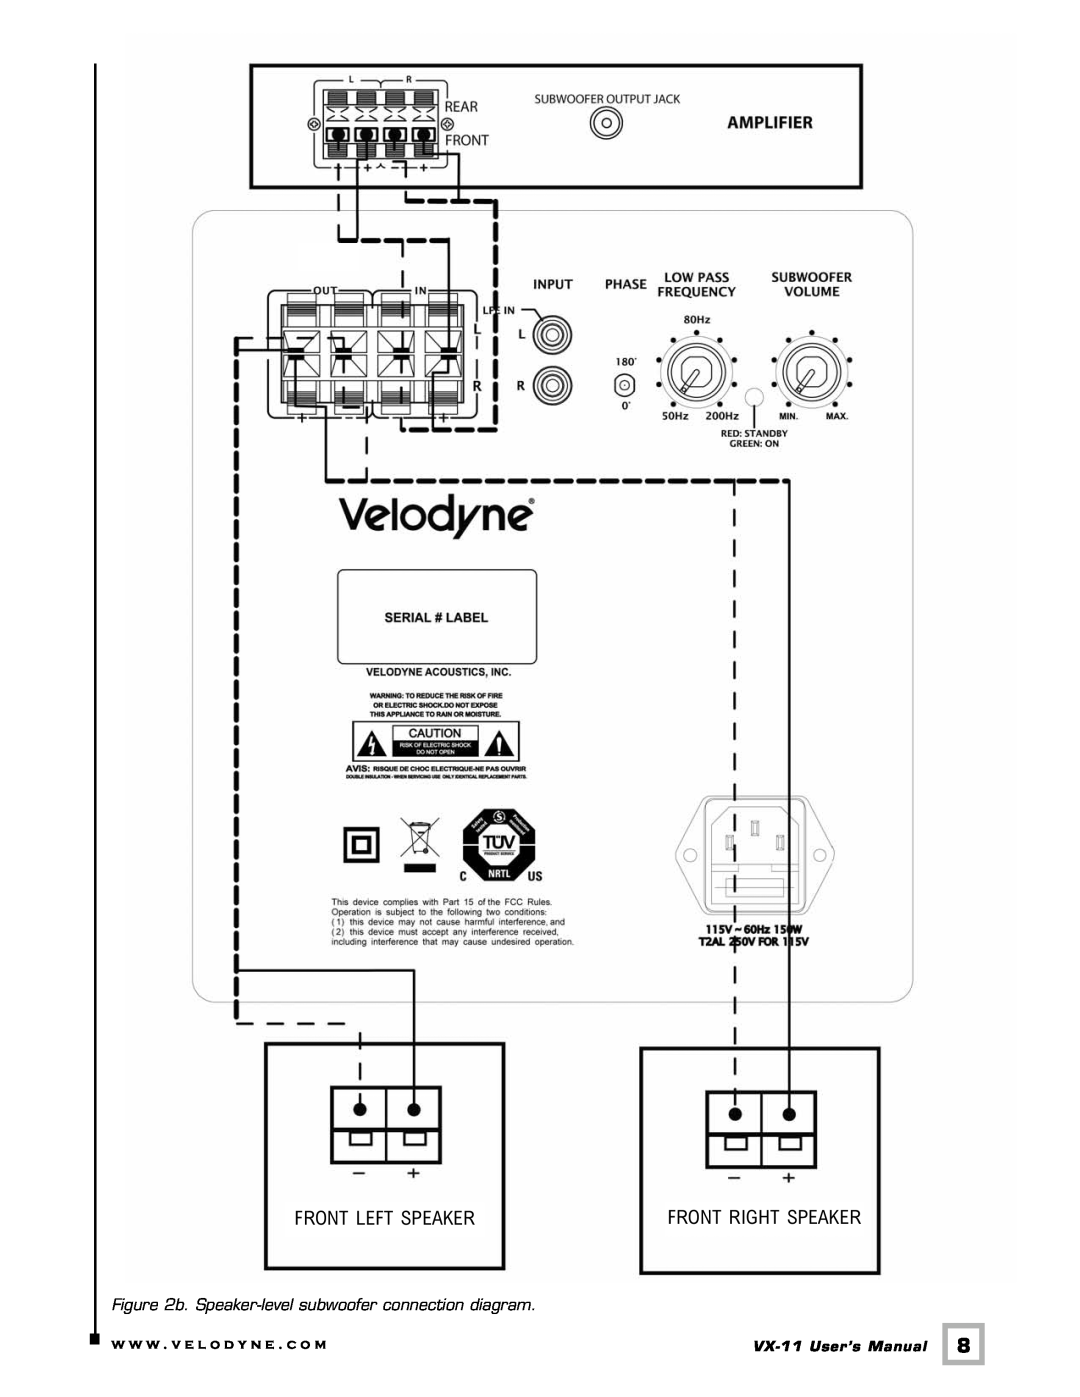 Velodyne Acoustics VX-11 user manual Front Left Speaker, Front Right Speaker, b. Speaker-level subwoofer connection diagram 